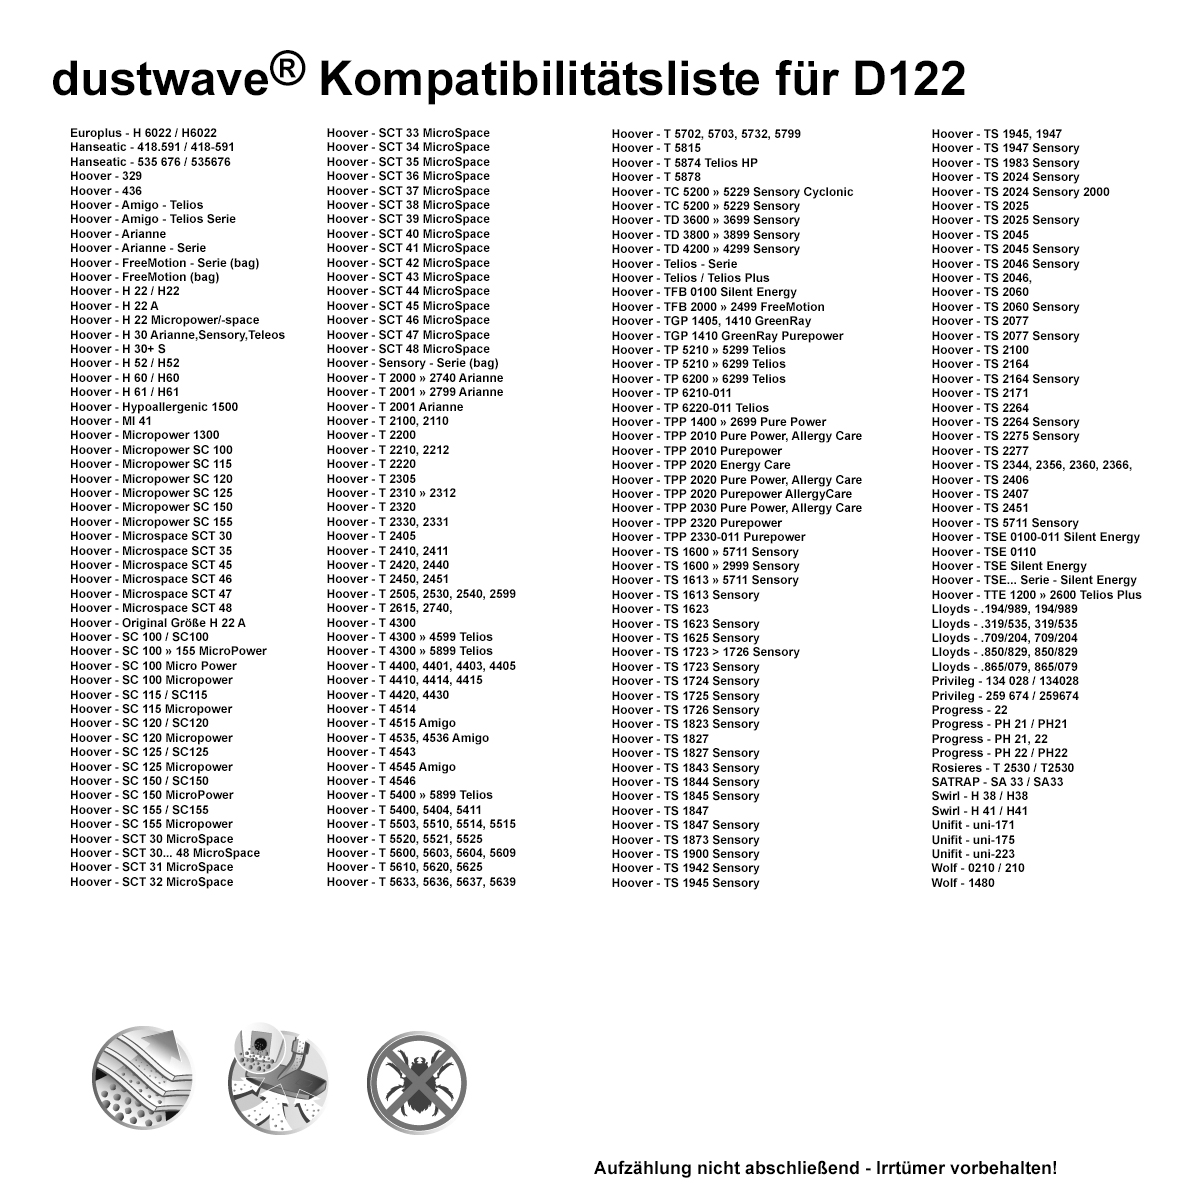 Dustwave® 20 Staubsaugerbeutel für Hoover TSE 0145 Silent Energy - hocheffizient, mehrlagiges Mikrovlies mit Hygieneverschluss - Made in Germany